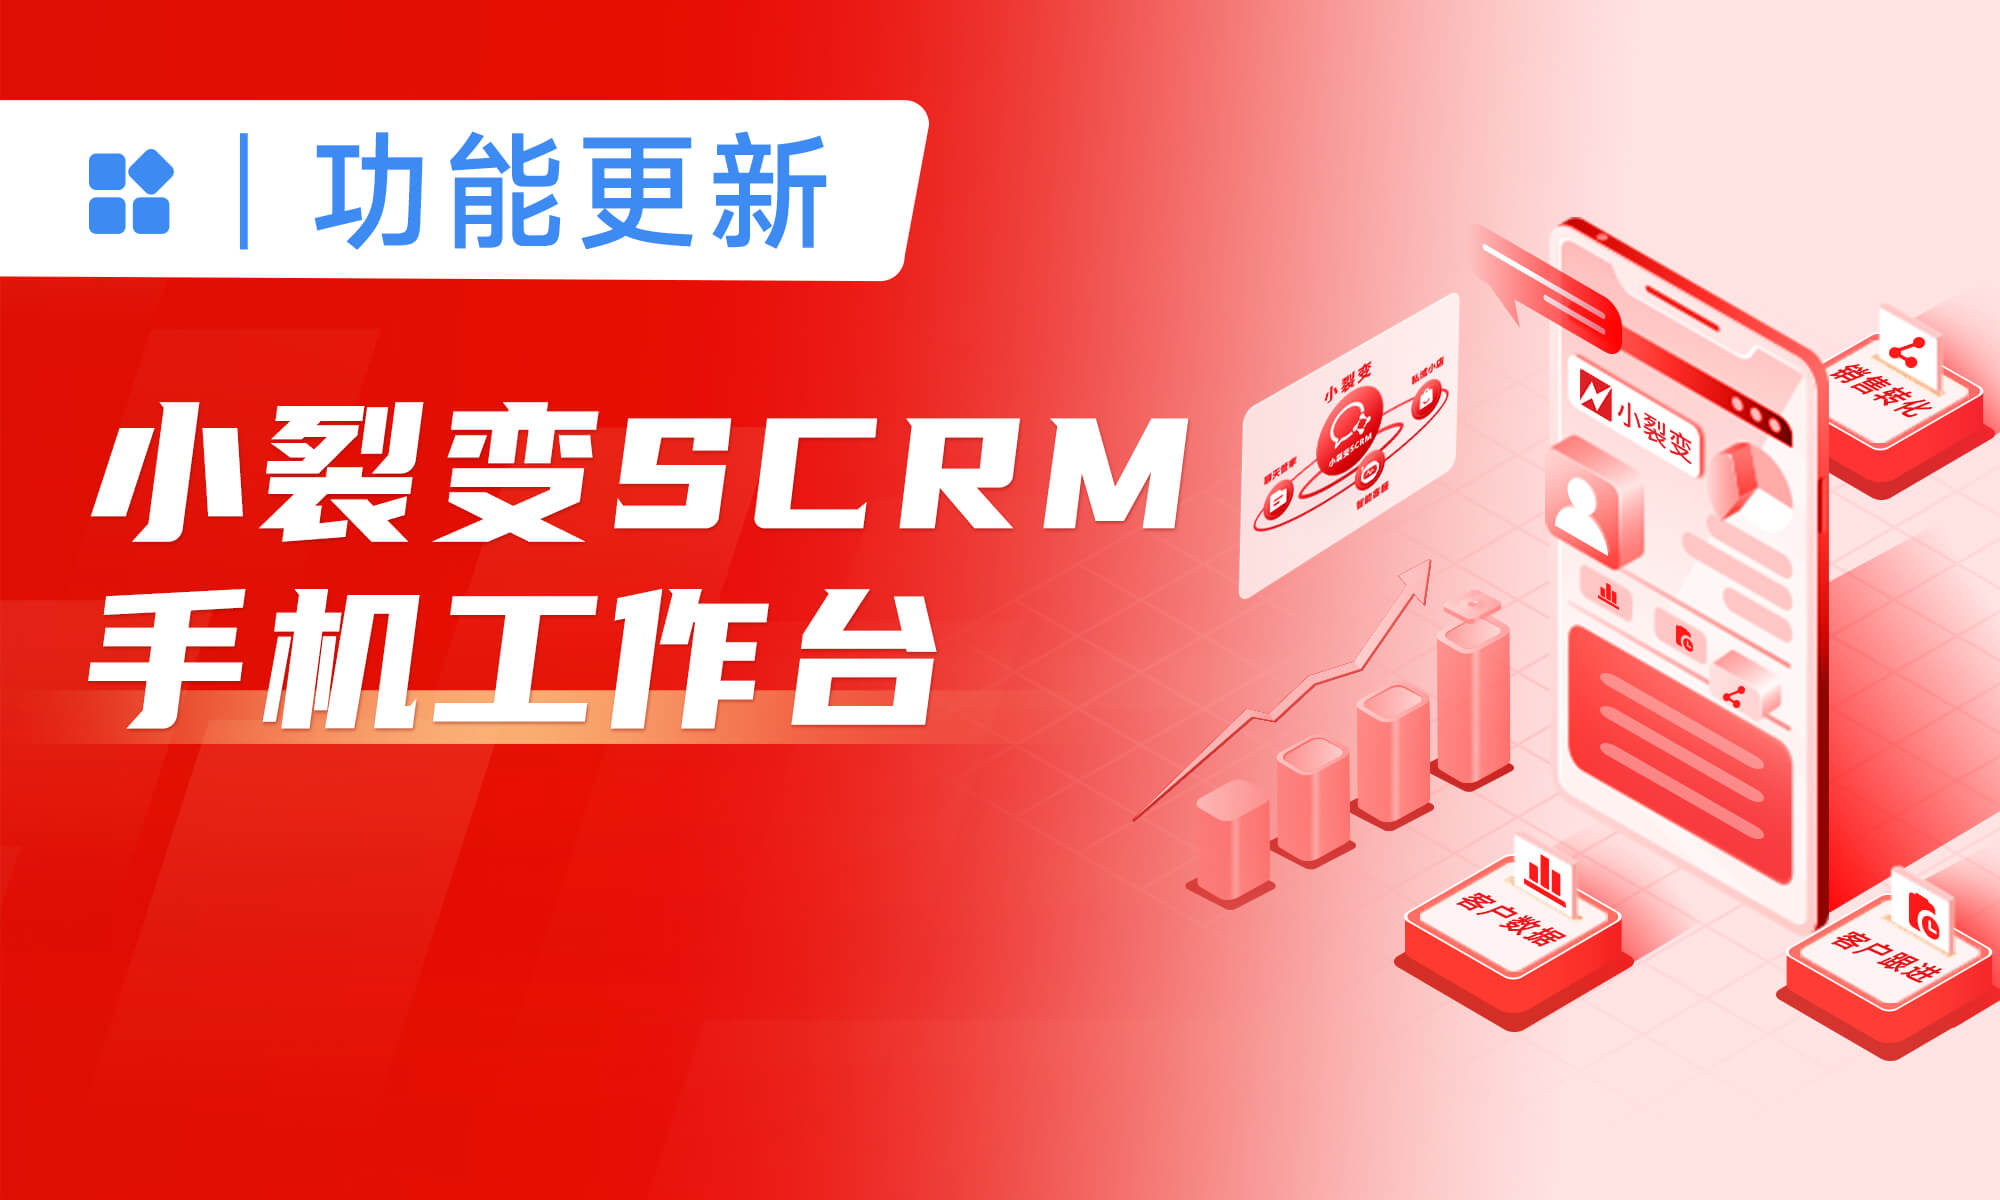 小裂变SCRM工作台，轻松提效一线员工（销售、导购、客服）私域运营!